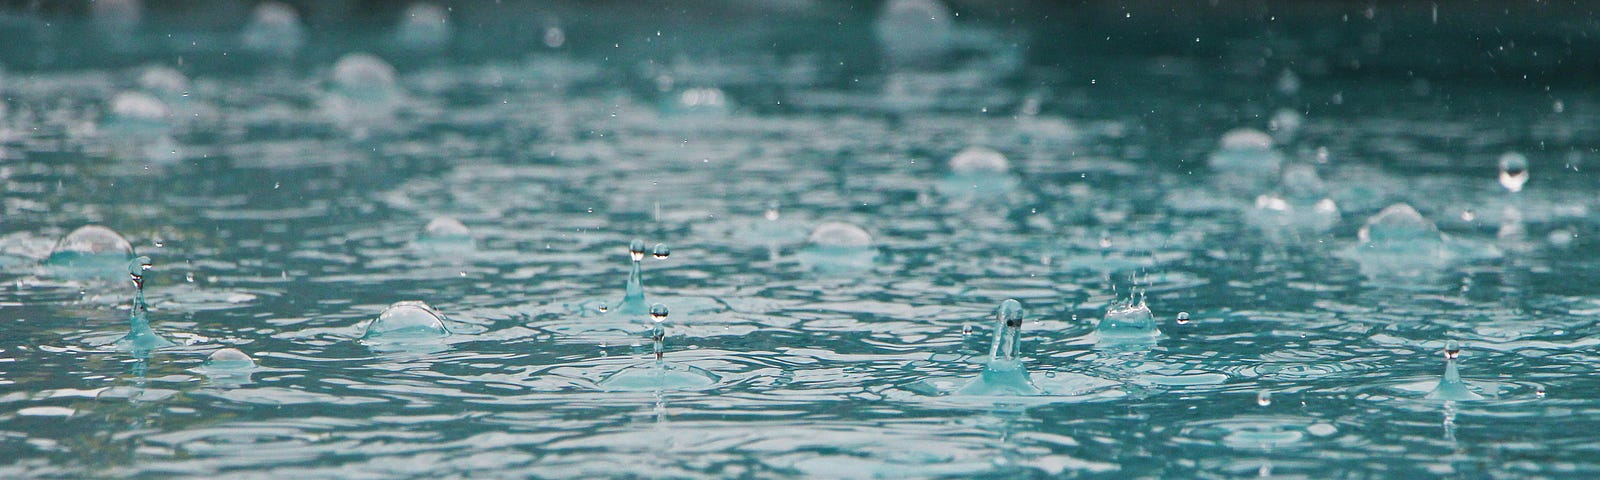 Rain drops landing on water